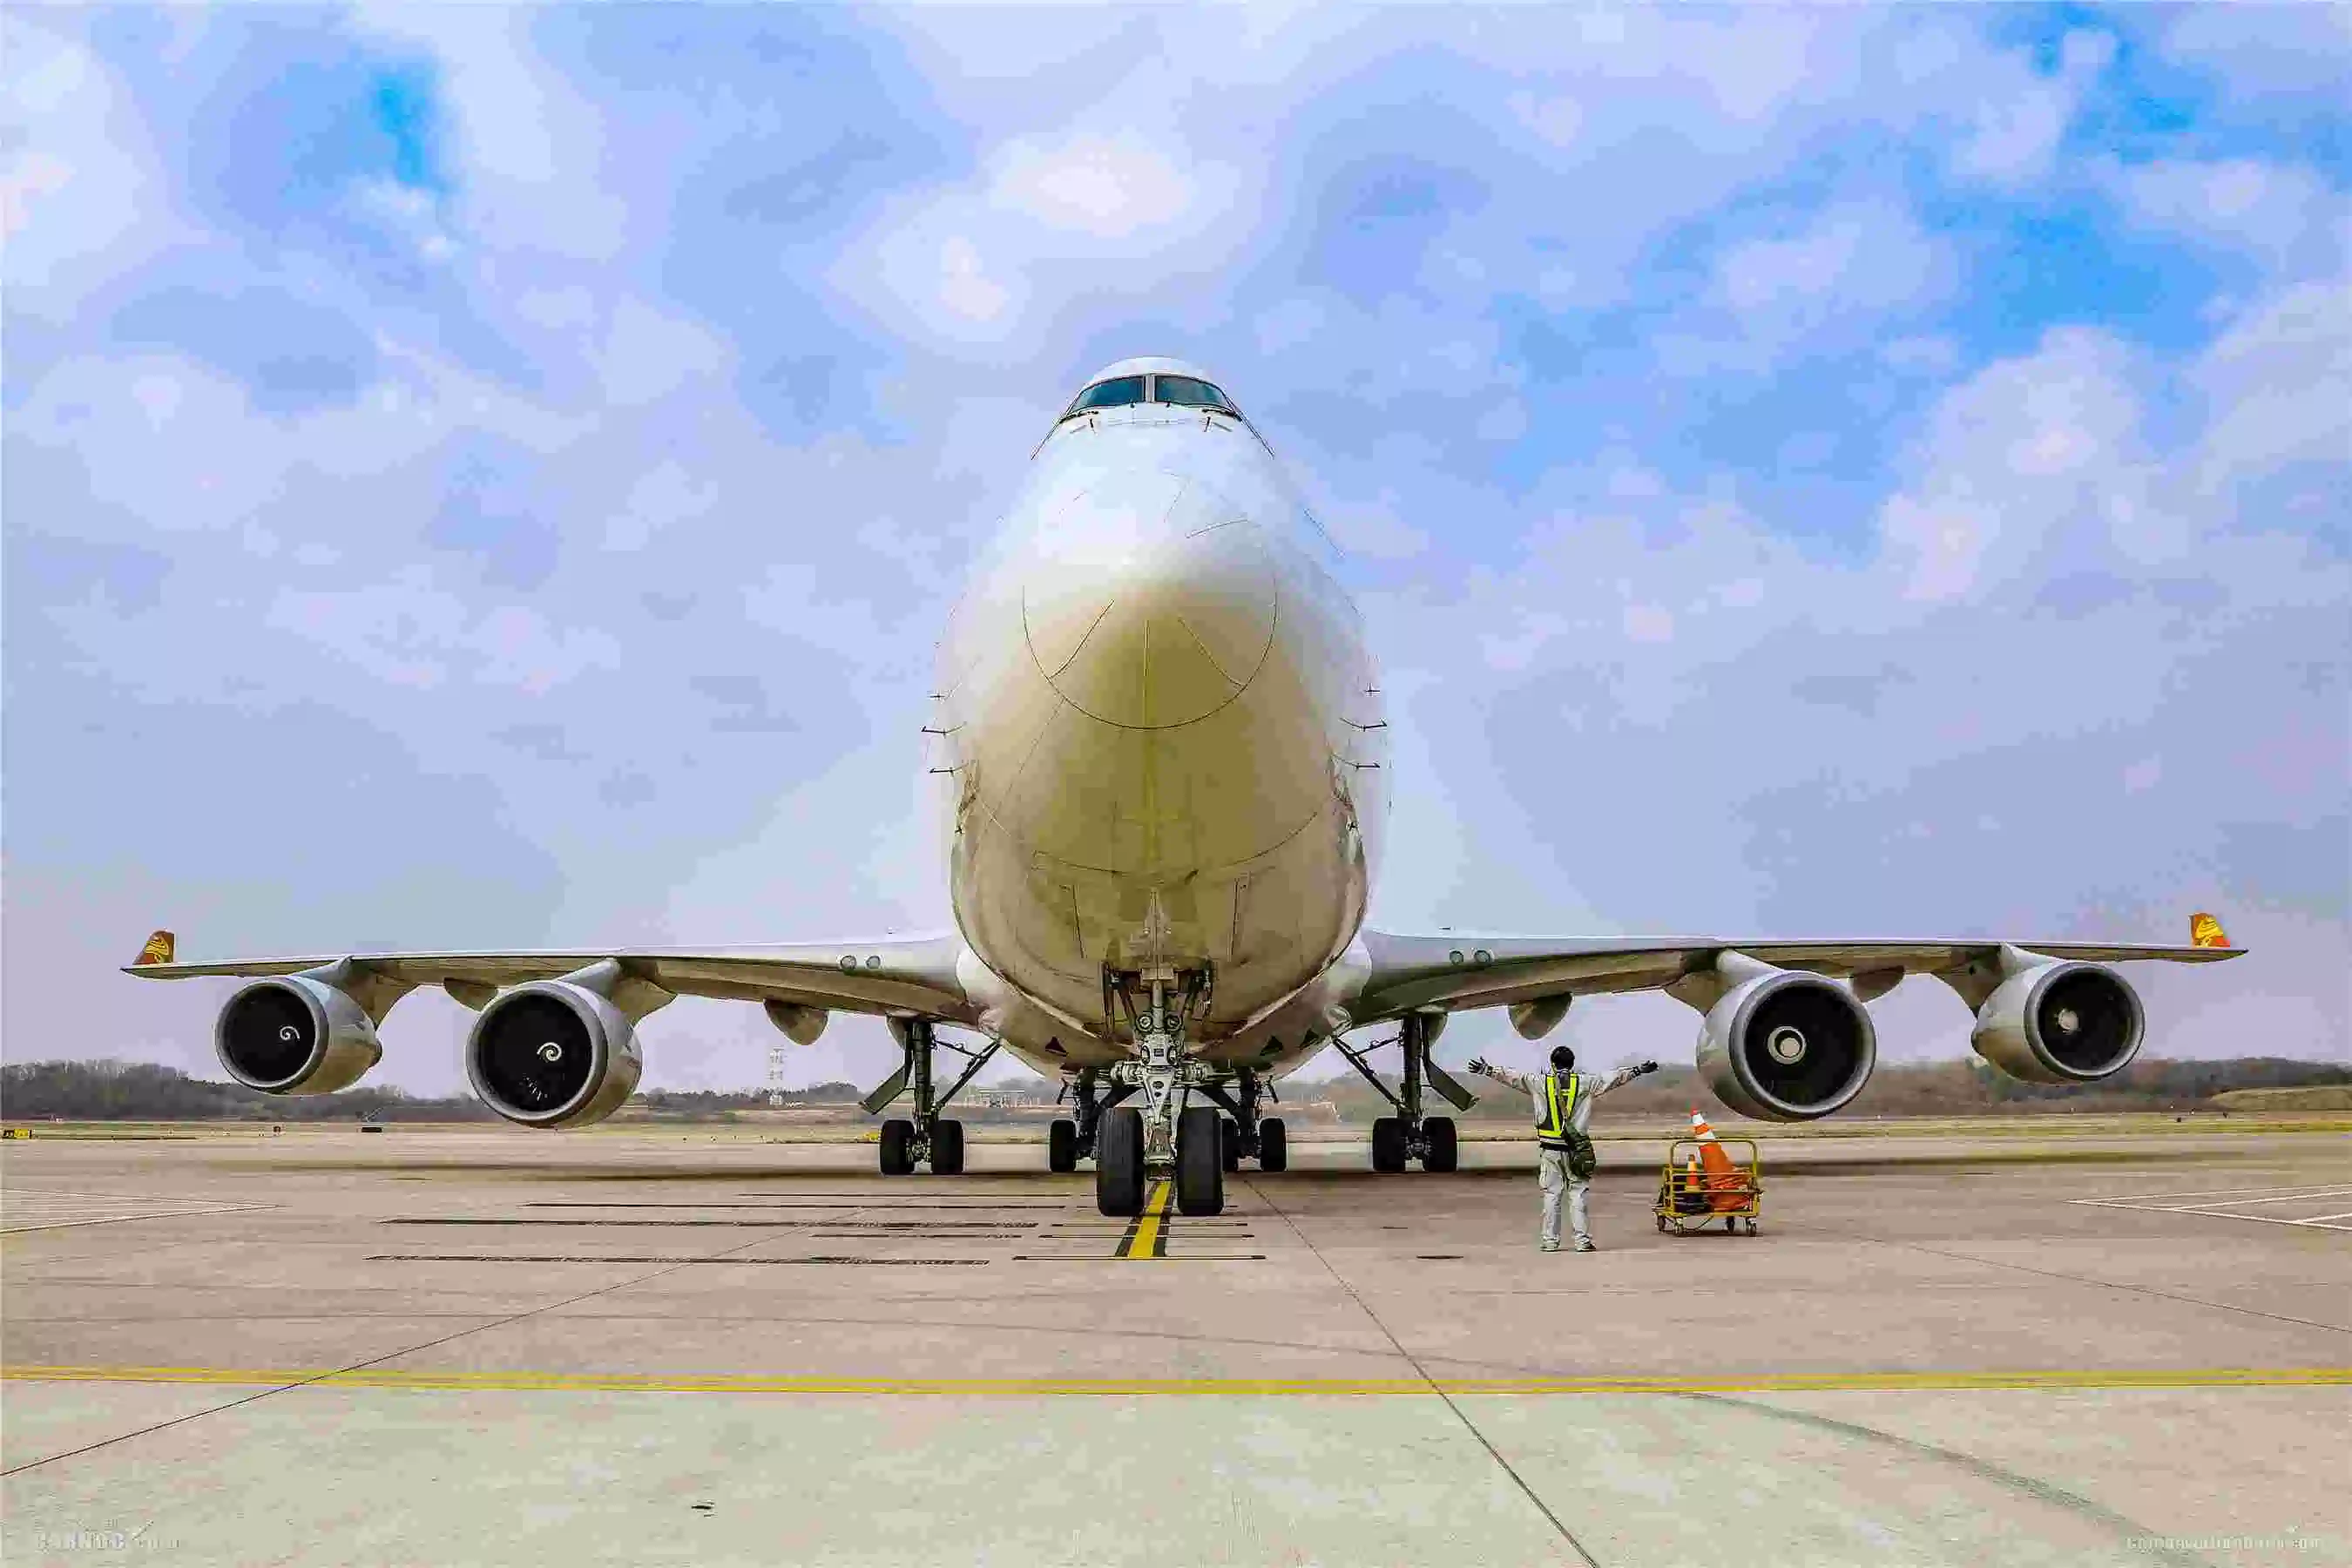 Profissional Amazon FBA Freight aéreo/DHL FedEx UPS TNT/Agente de expedição da China para Peru